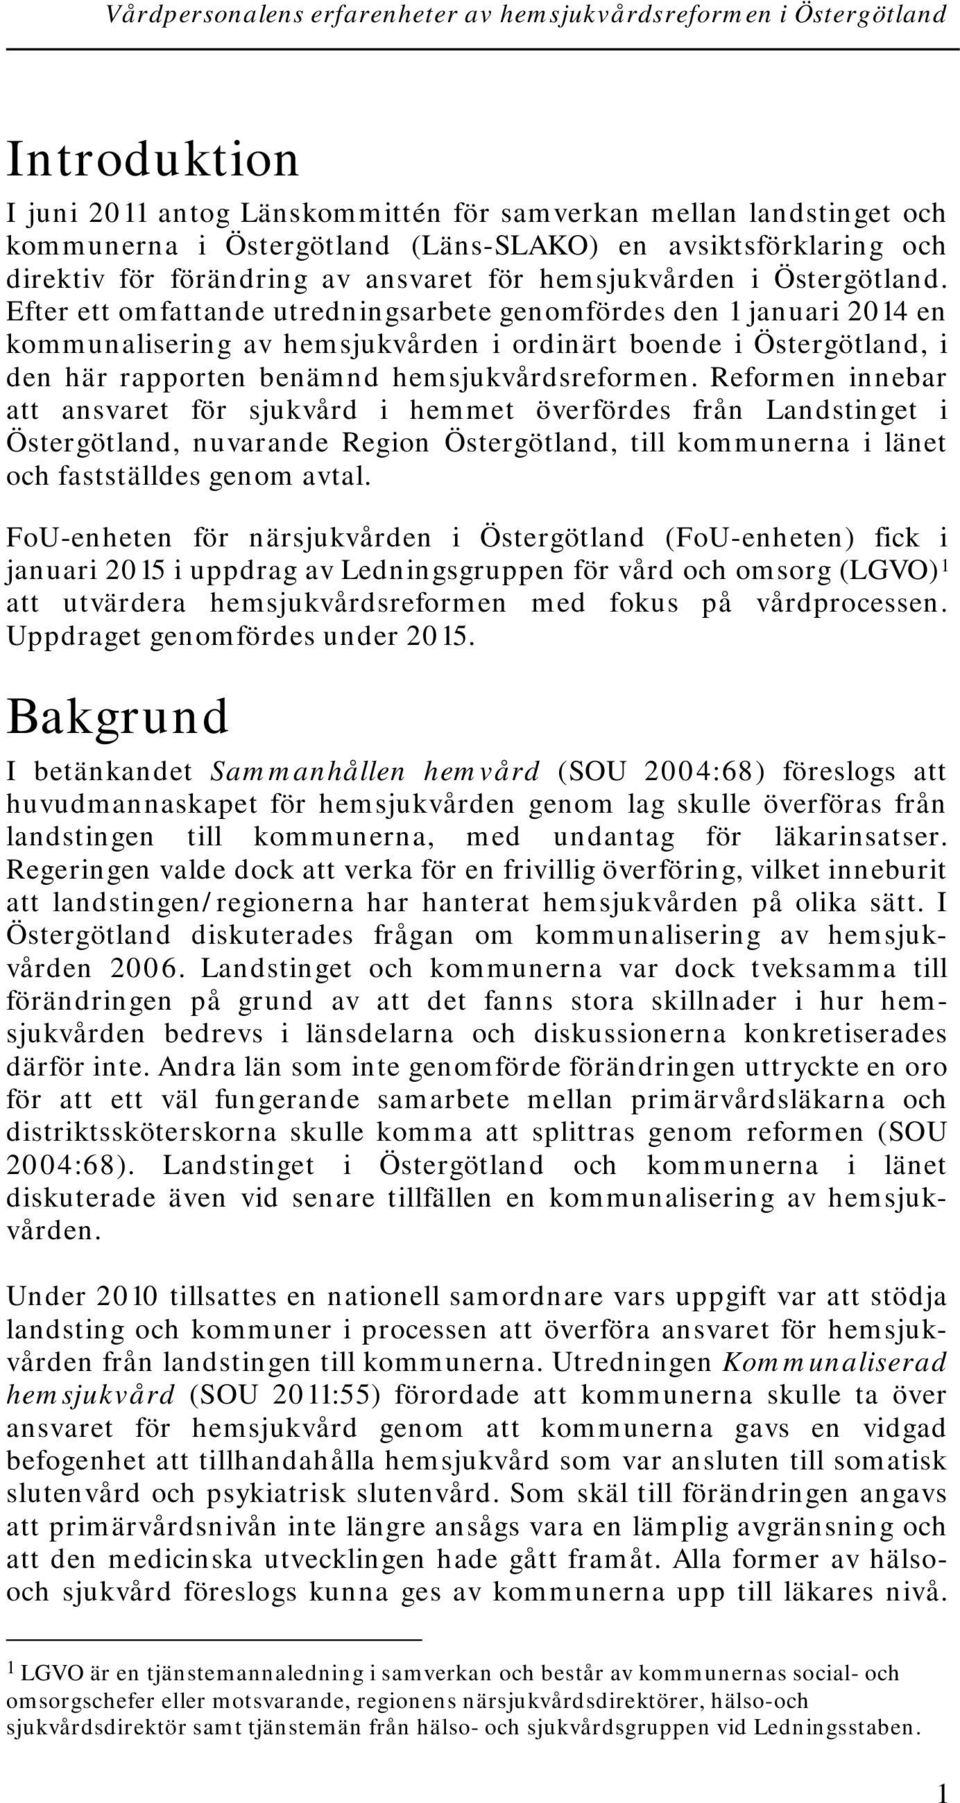 Efter ett omfattande utredningsarbete genomfördes den 1 januari 2014 en kommunalisering av hemsjukvården i ordinärt boende i Östergötland, i den här rapporten benämnd hemsjukvårdsreformen.